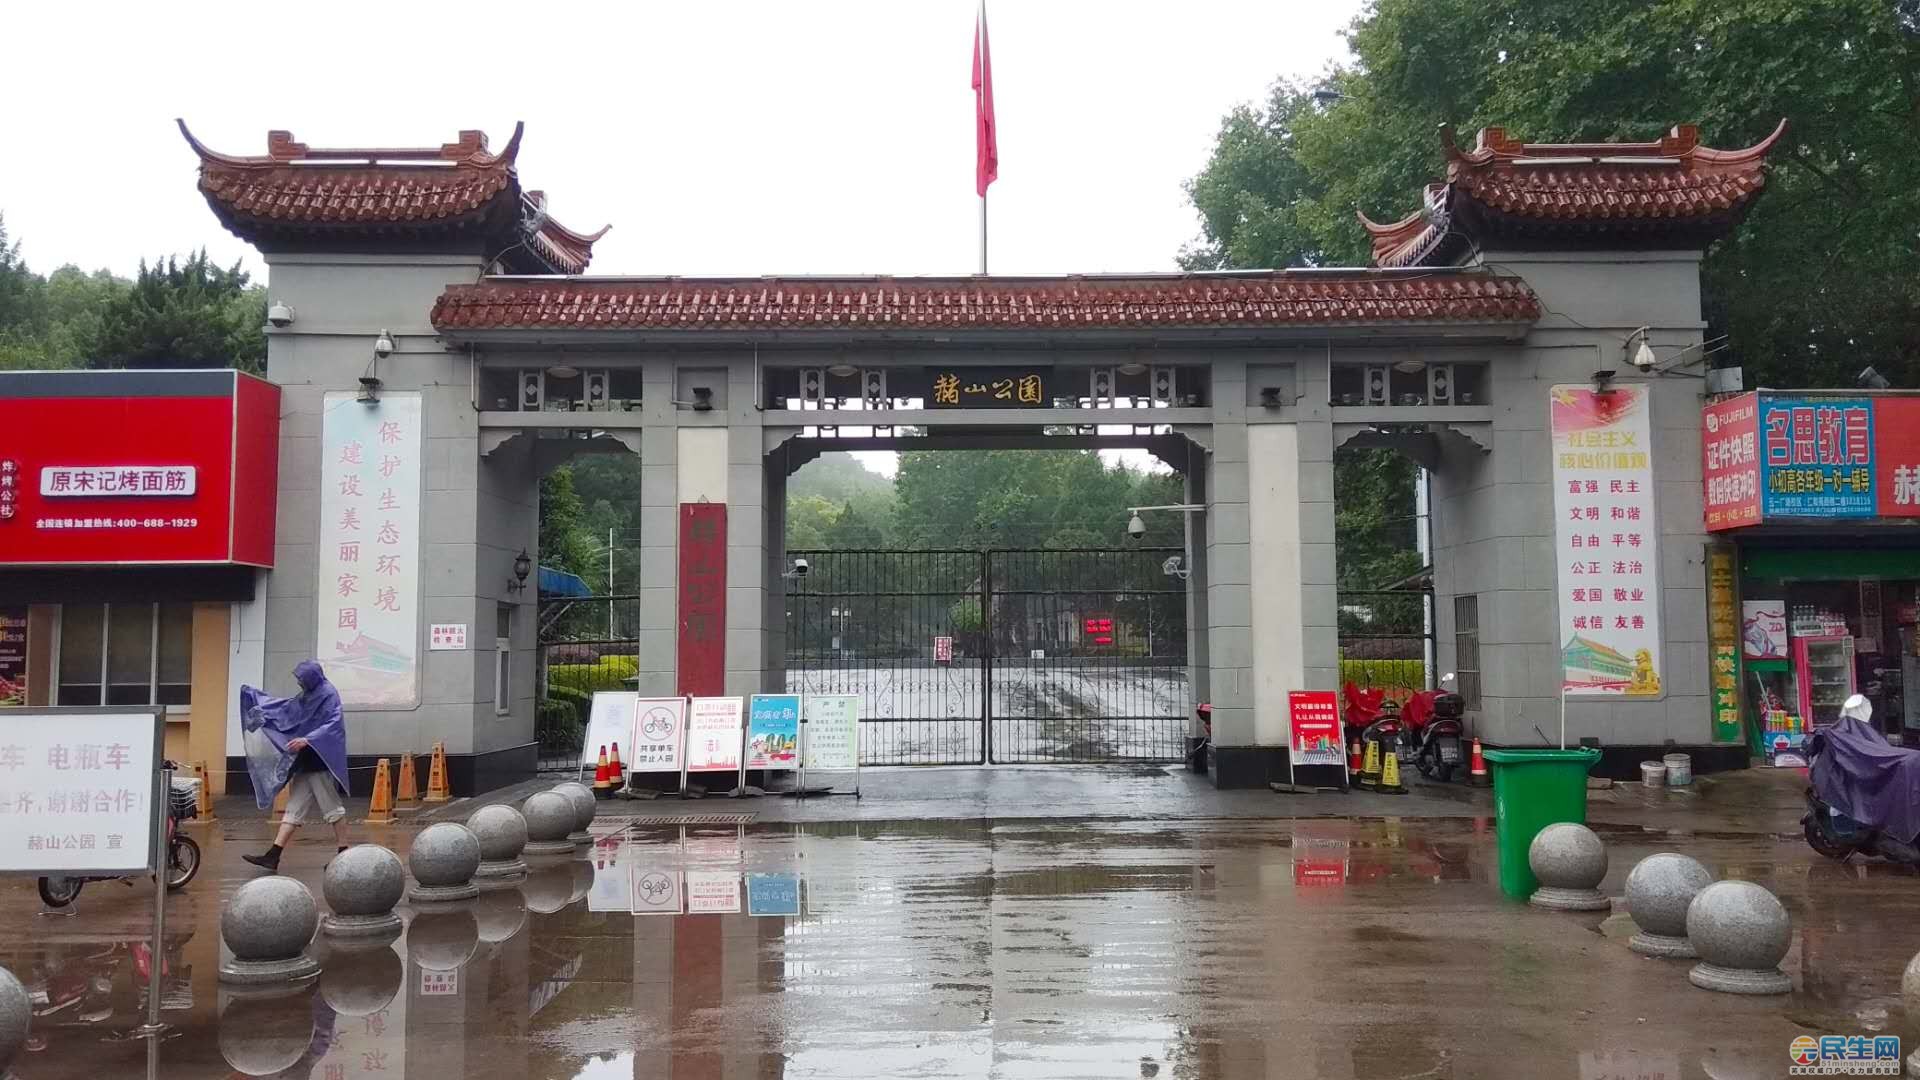 近日,芜湖民生网app网友发现赭山公园的东大门紧闭